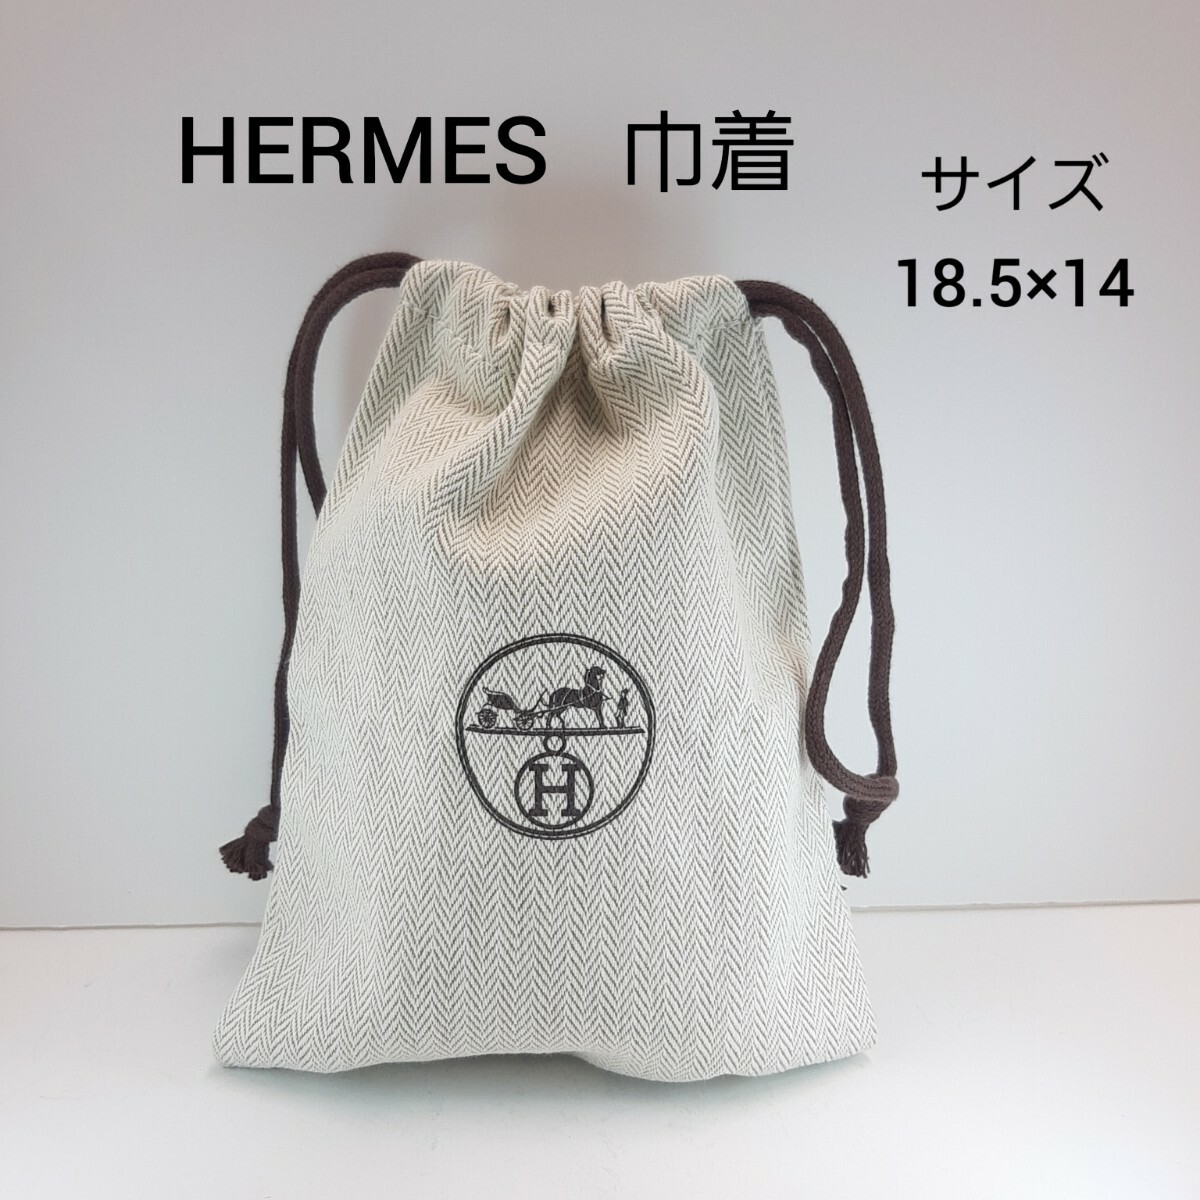 エルメス 巾着袋 ナイルの庭 香水 HERMES 非売品 ポーチの画像1